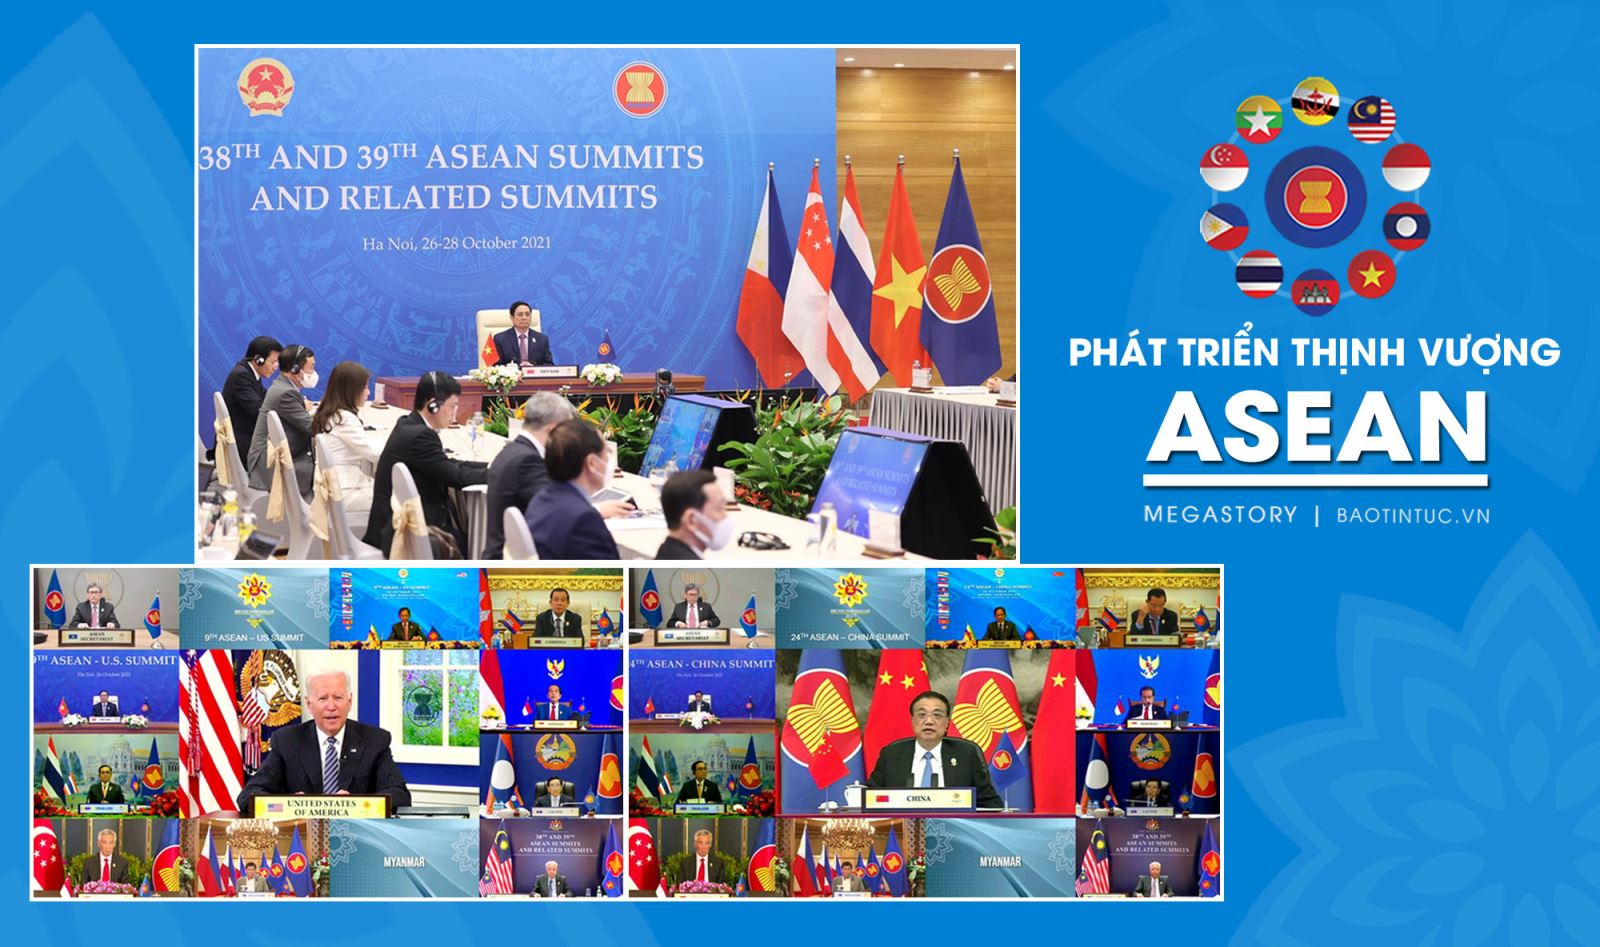 Công bố Năm chỉ số liên kết giữa Trung Quốc và các quốc gia ASEAN  Doanh  nghiệp  Vietnam VietnamPlus